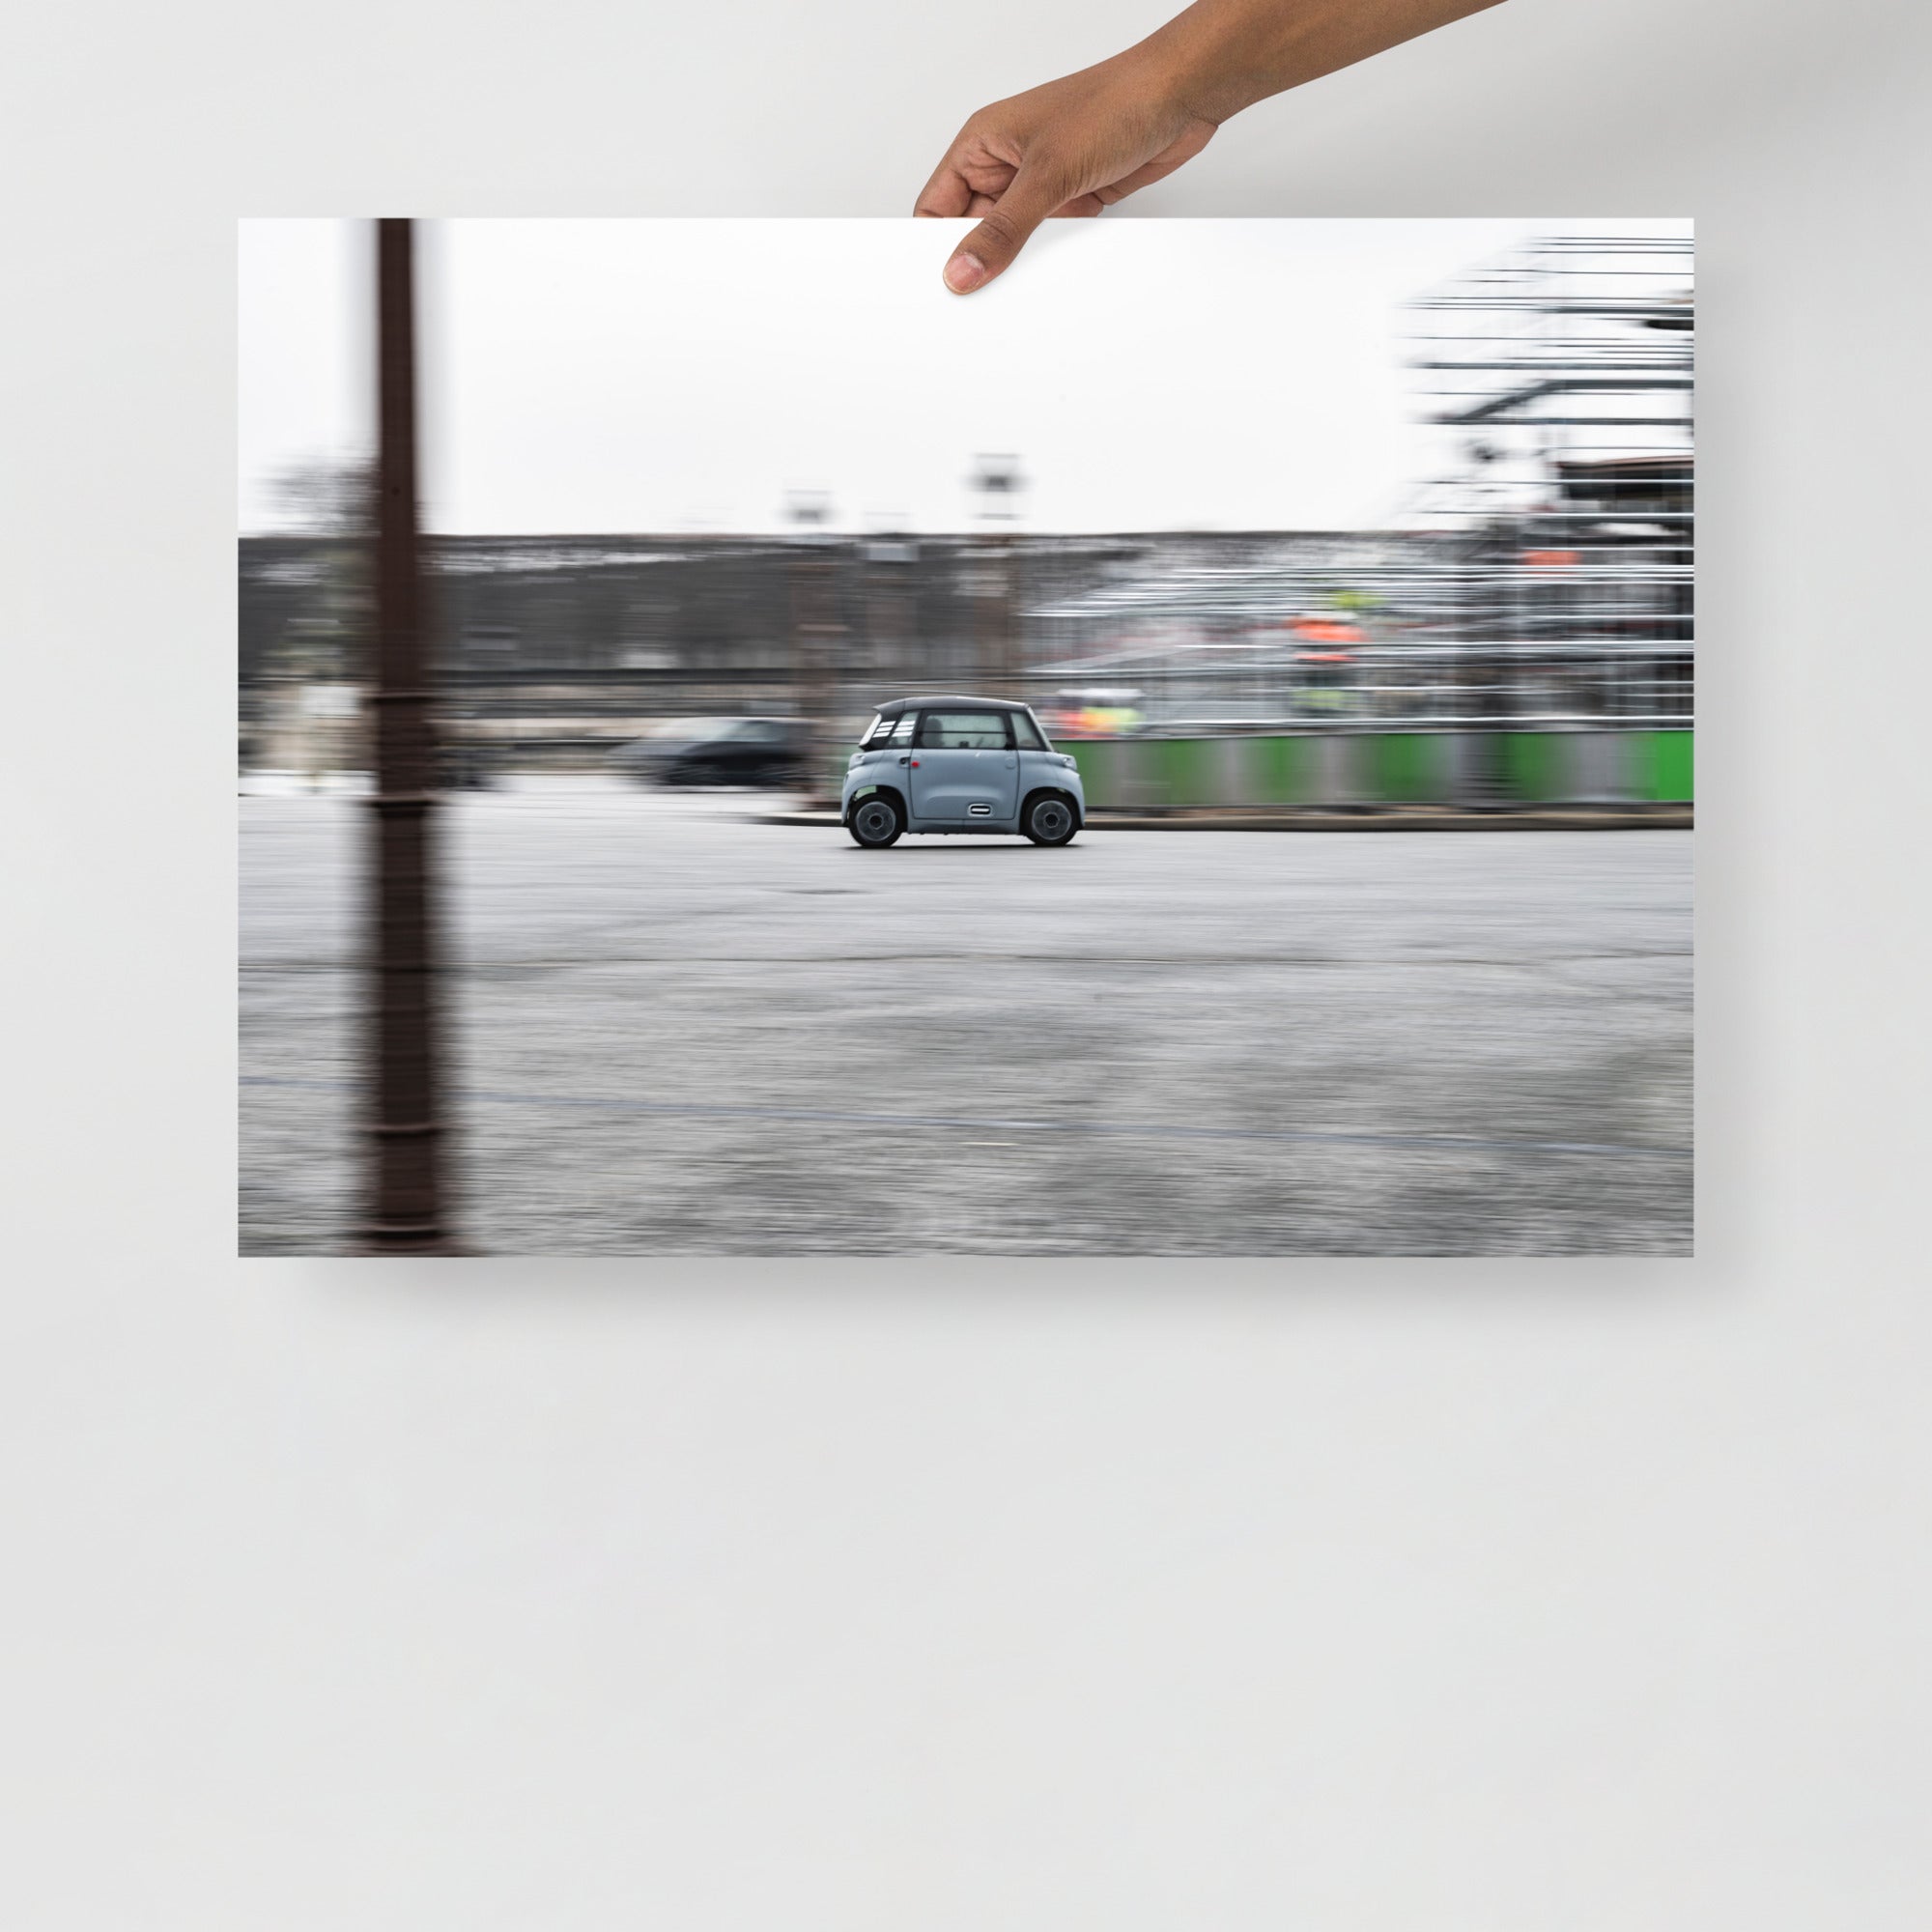  Poster mural - Citroën Ami – Photographie de voiture – Poster photo, poster XXL, Photo d’art, photographie murale et des posters muraux des photographies de rue unique au monde. La boutique de posters créée par un Photographe français.